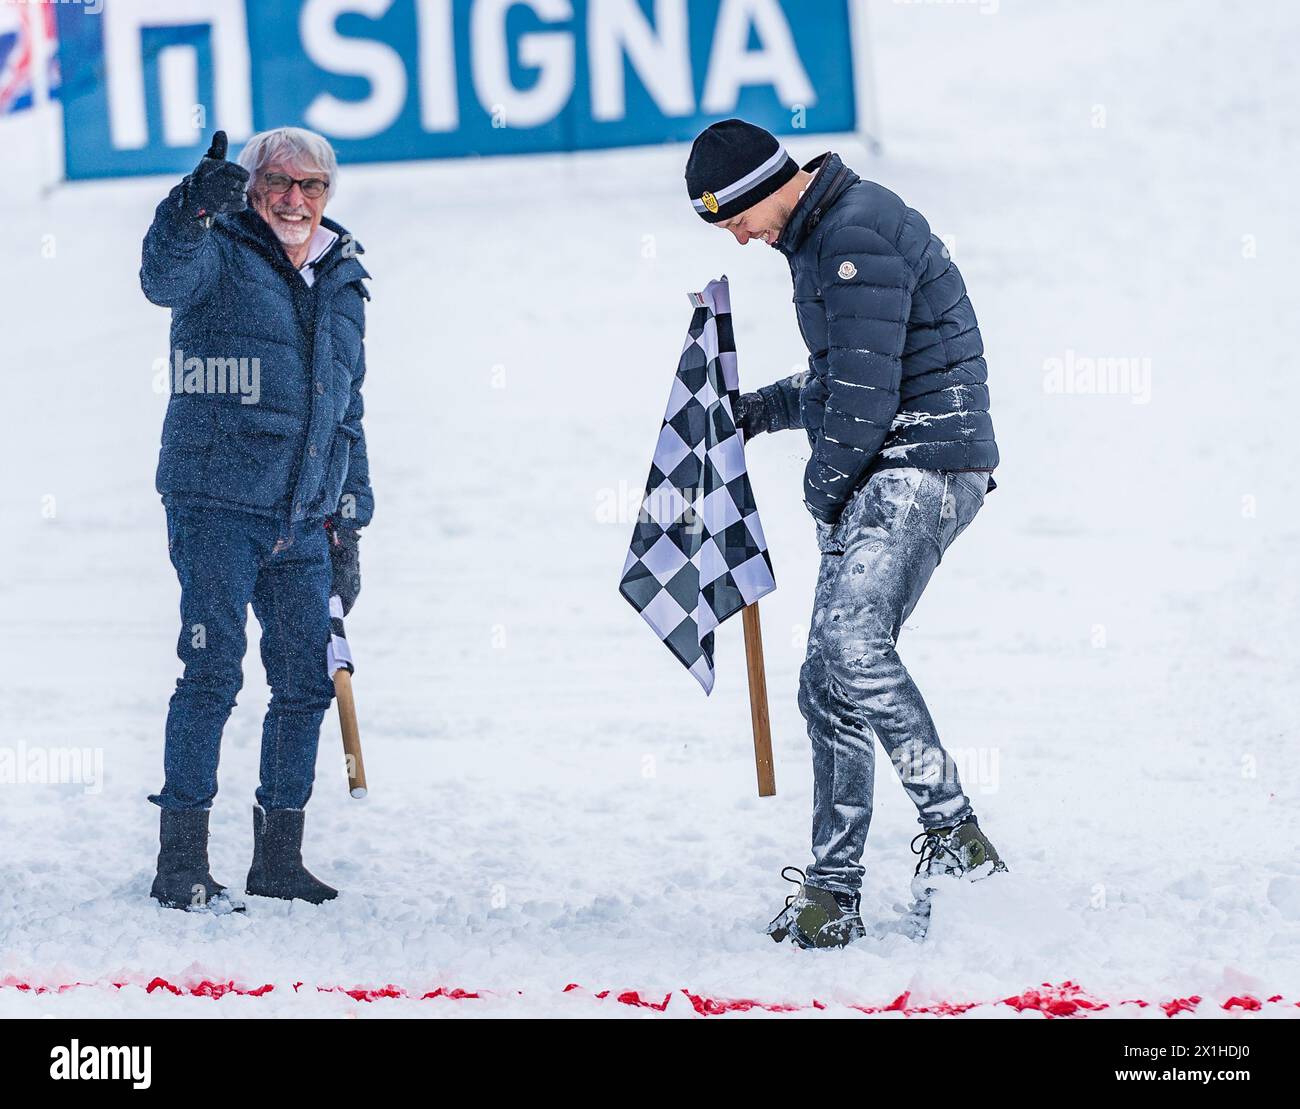 (L-R) Bernie Ecclestone, Sebastian Vettel durante il Kitz Charity Trophy della Coppa del mondo di sci alpino FIS all'Hahnenkamm di Kitzbühel, Austria, il 2018/01/20. - 20190126 PD5258 - Rechteinfo: Rights Managed (RM) Foto Stock